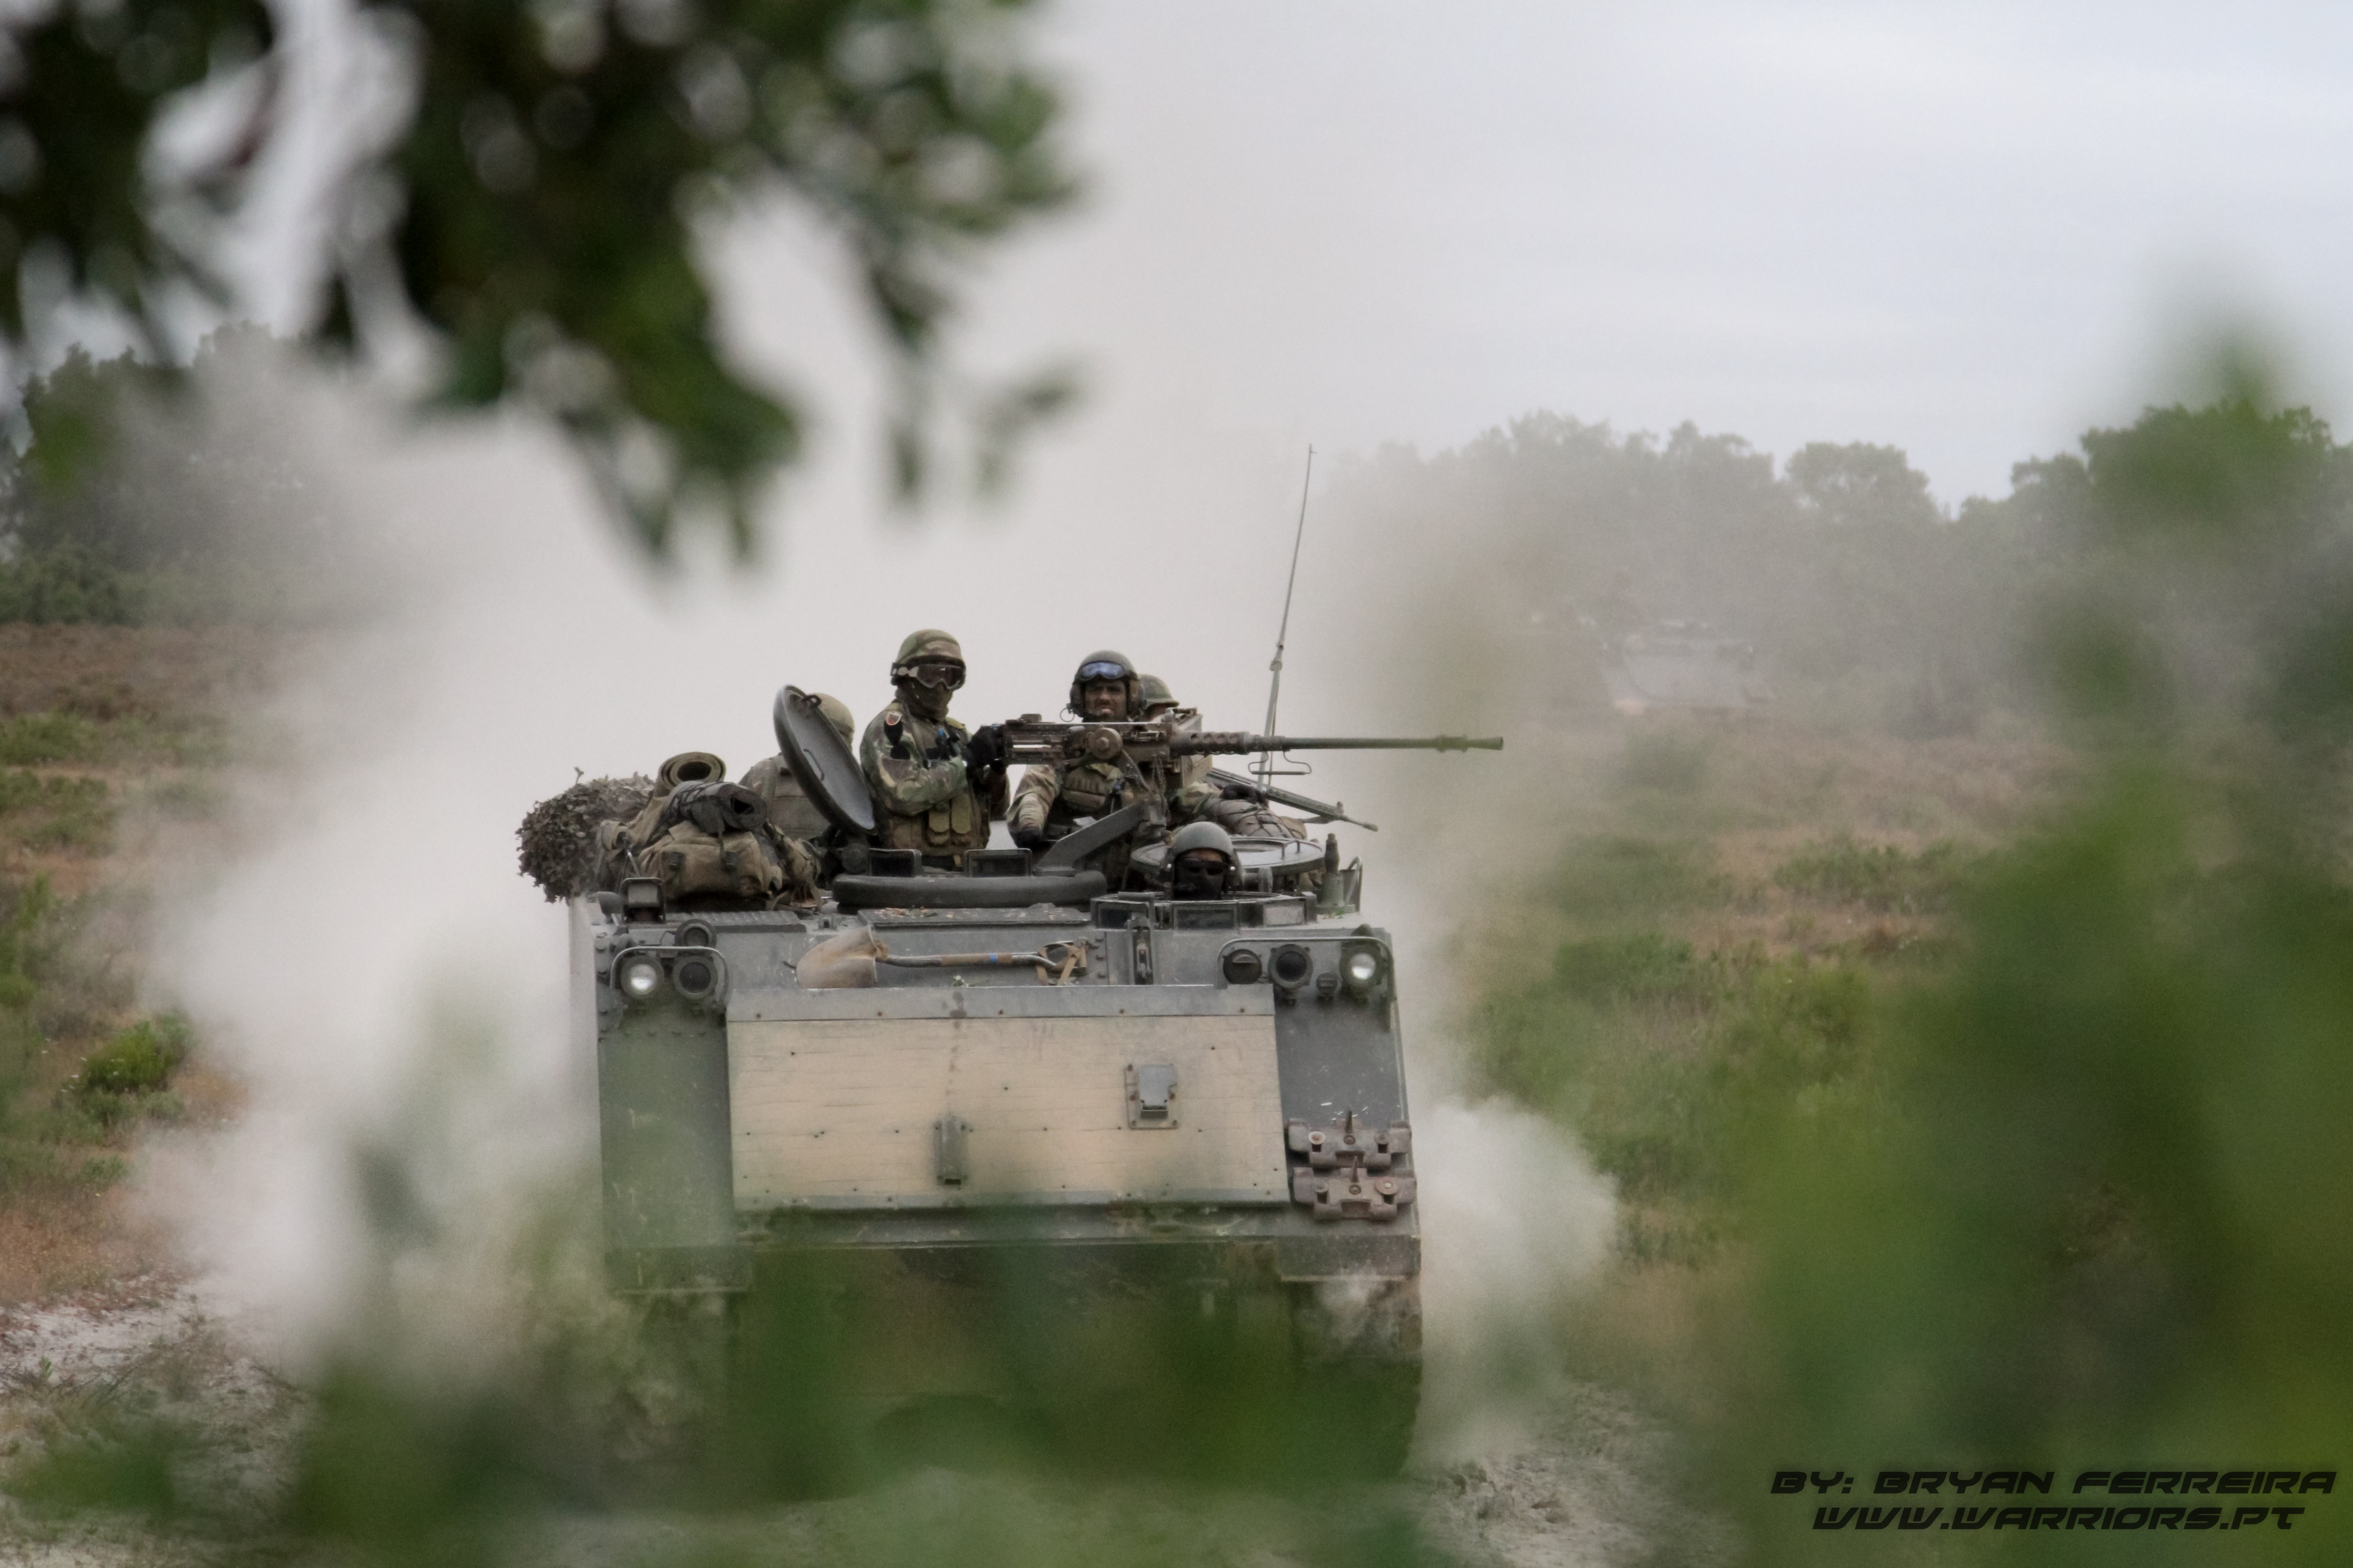 Veiculo M113 do Batalhao de Infantaria Mecanizada